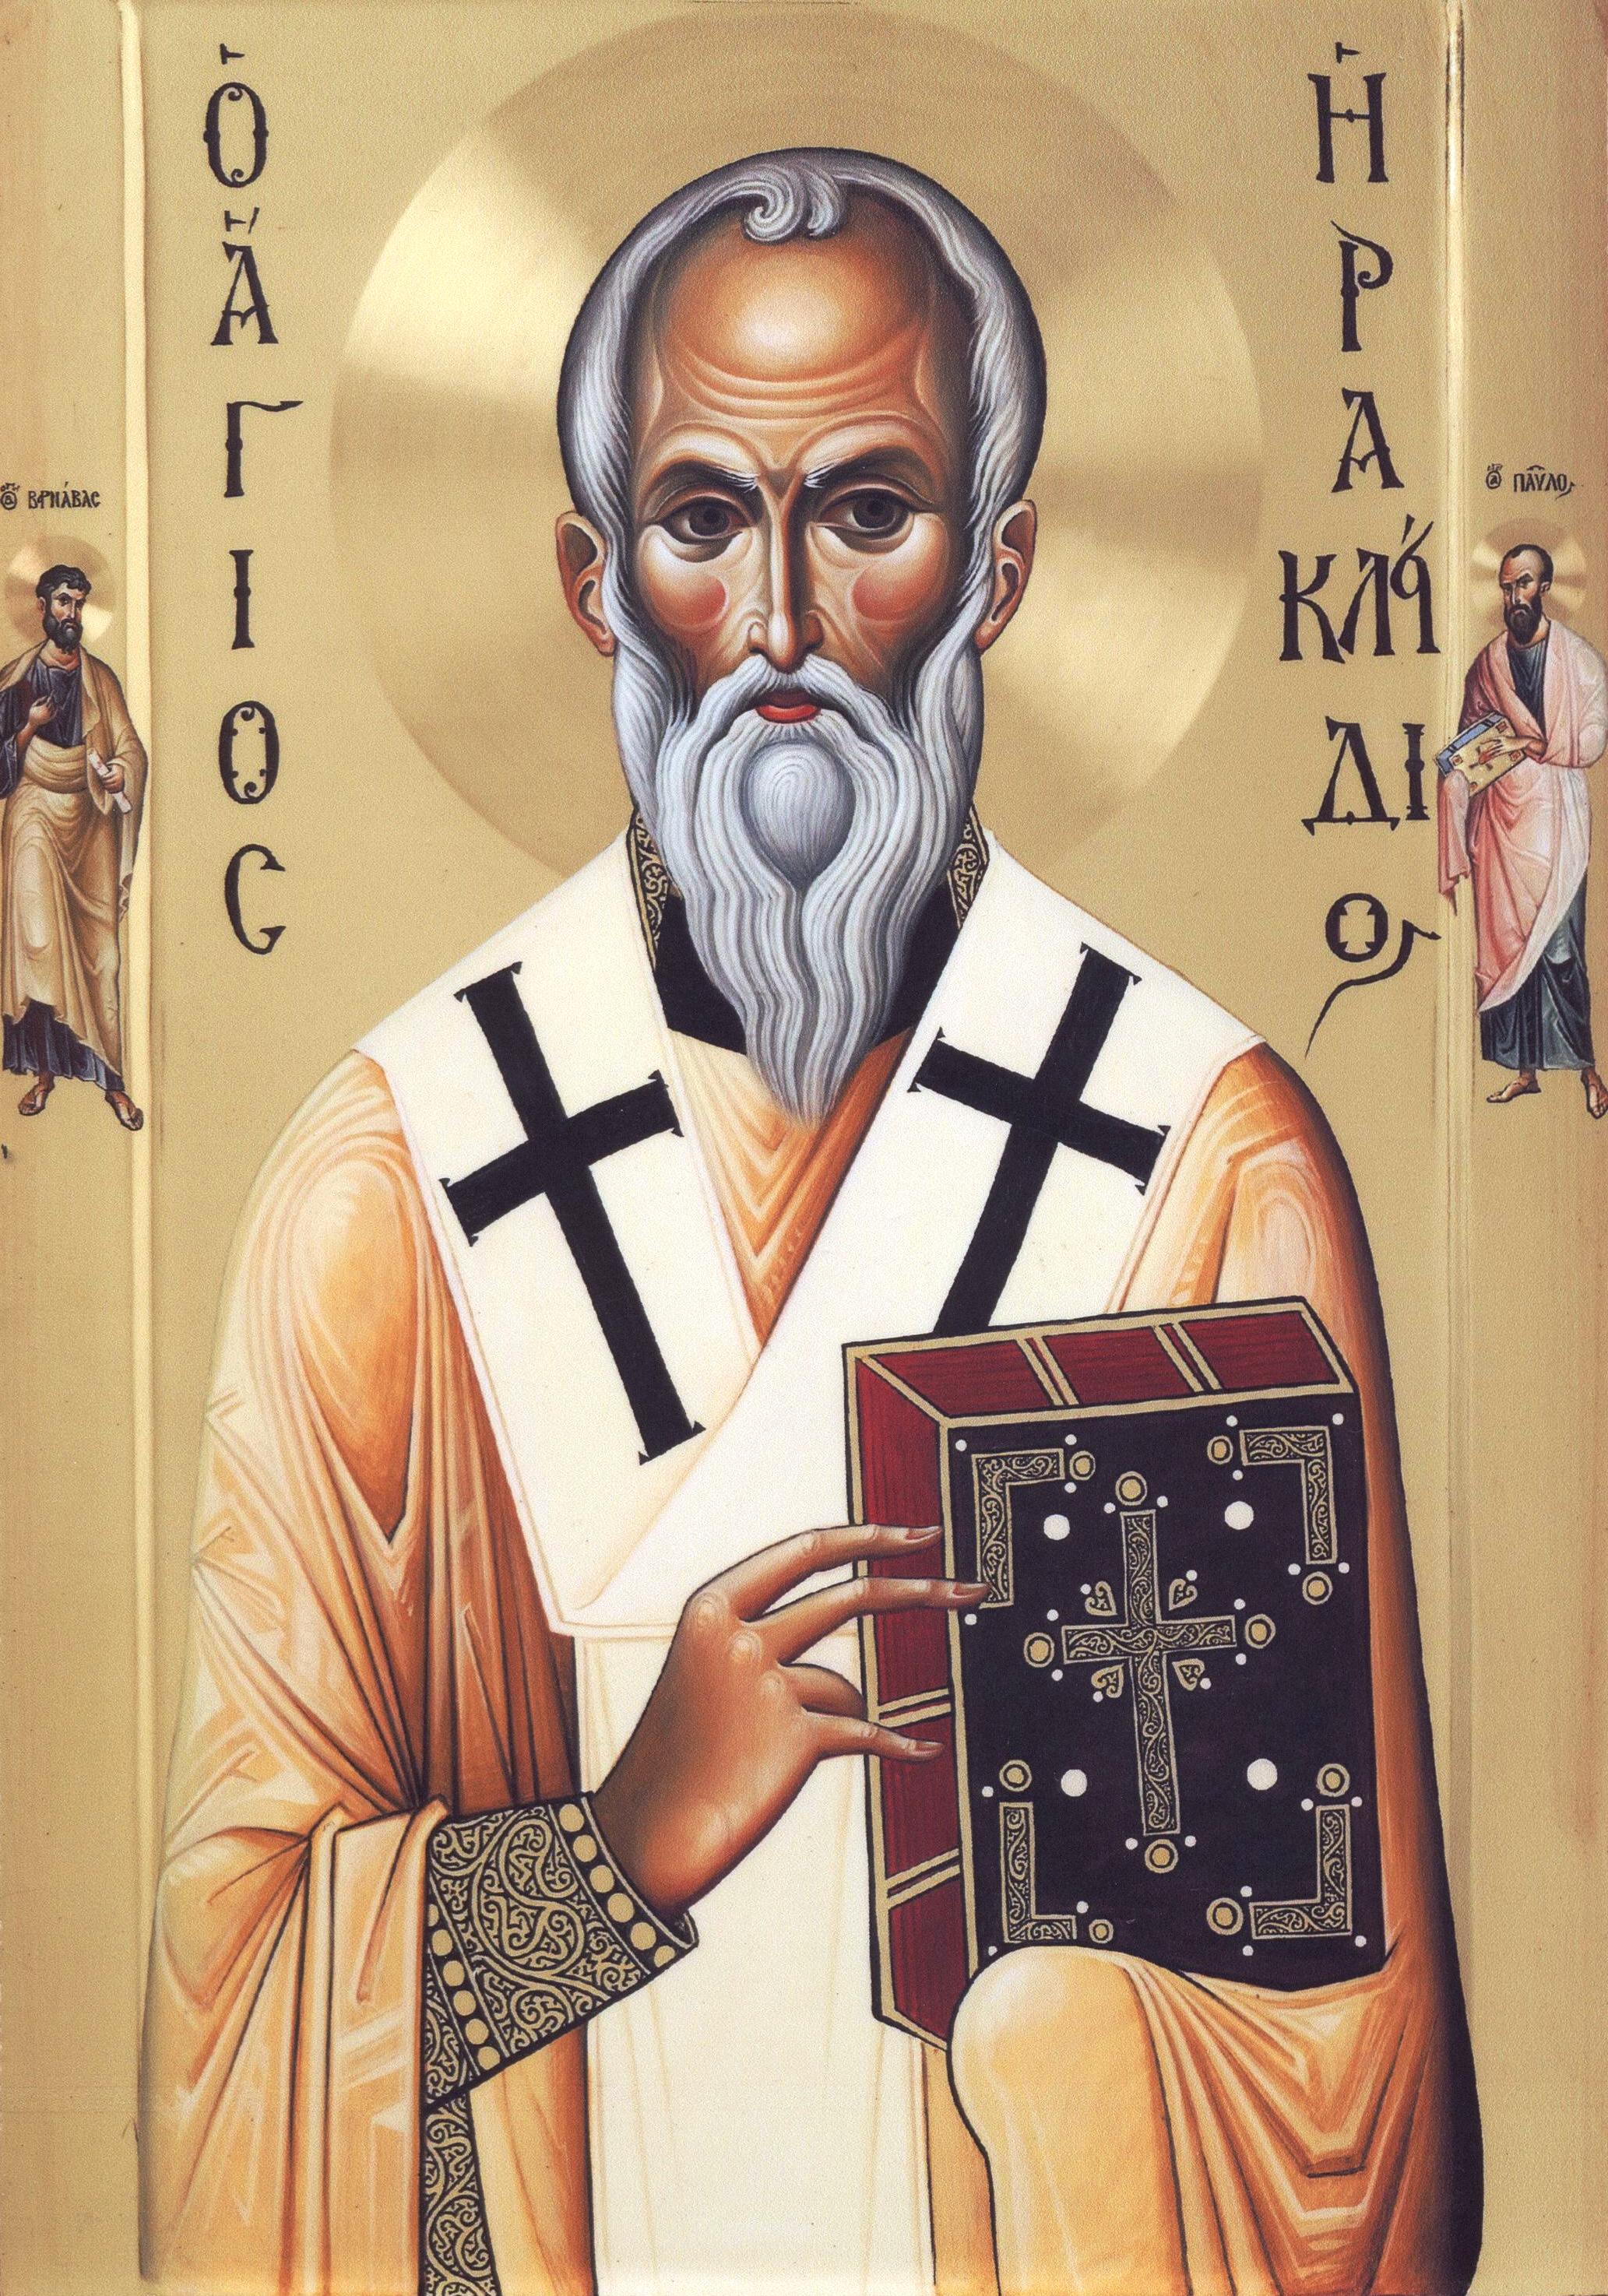 Η νέα εφέστιος εικόνα του Αγίου Ηρακλειδίου της ομωνύμου του Ιεράς Μονής. Η εικόνα αγιογραφήθηκε από το αγιογραφείο της Ιεράς Μεγίστης Μονής Βατοπαιδίου και είναι δέηση των Δημητρίου και Άννας Γρηγορίου από την Λευκωσία της Κύπρου.